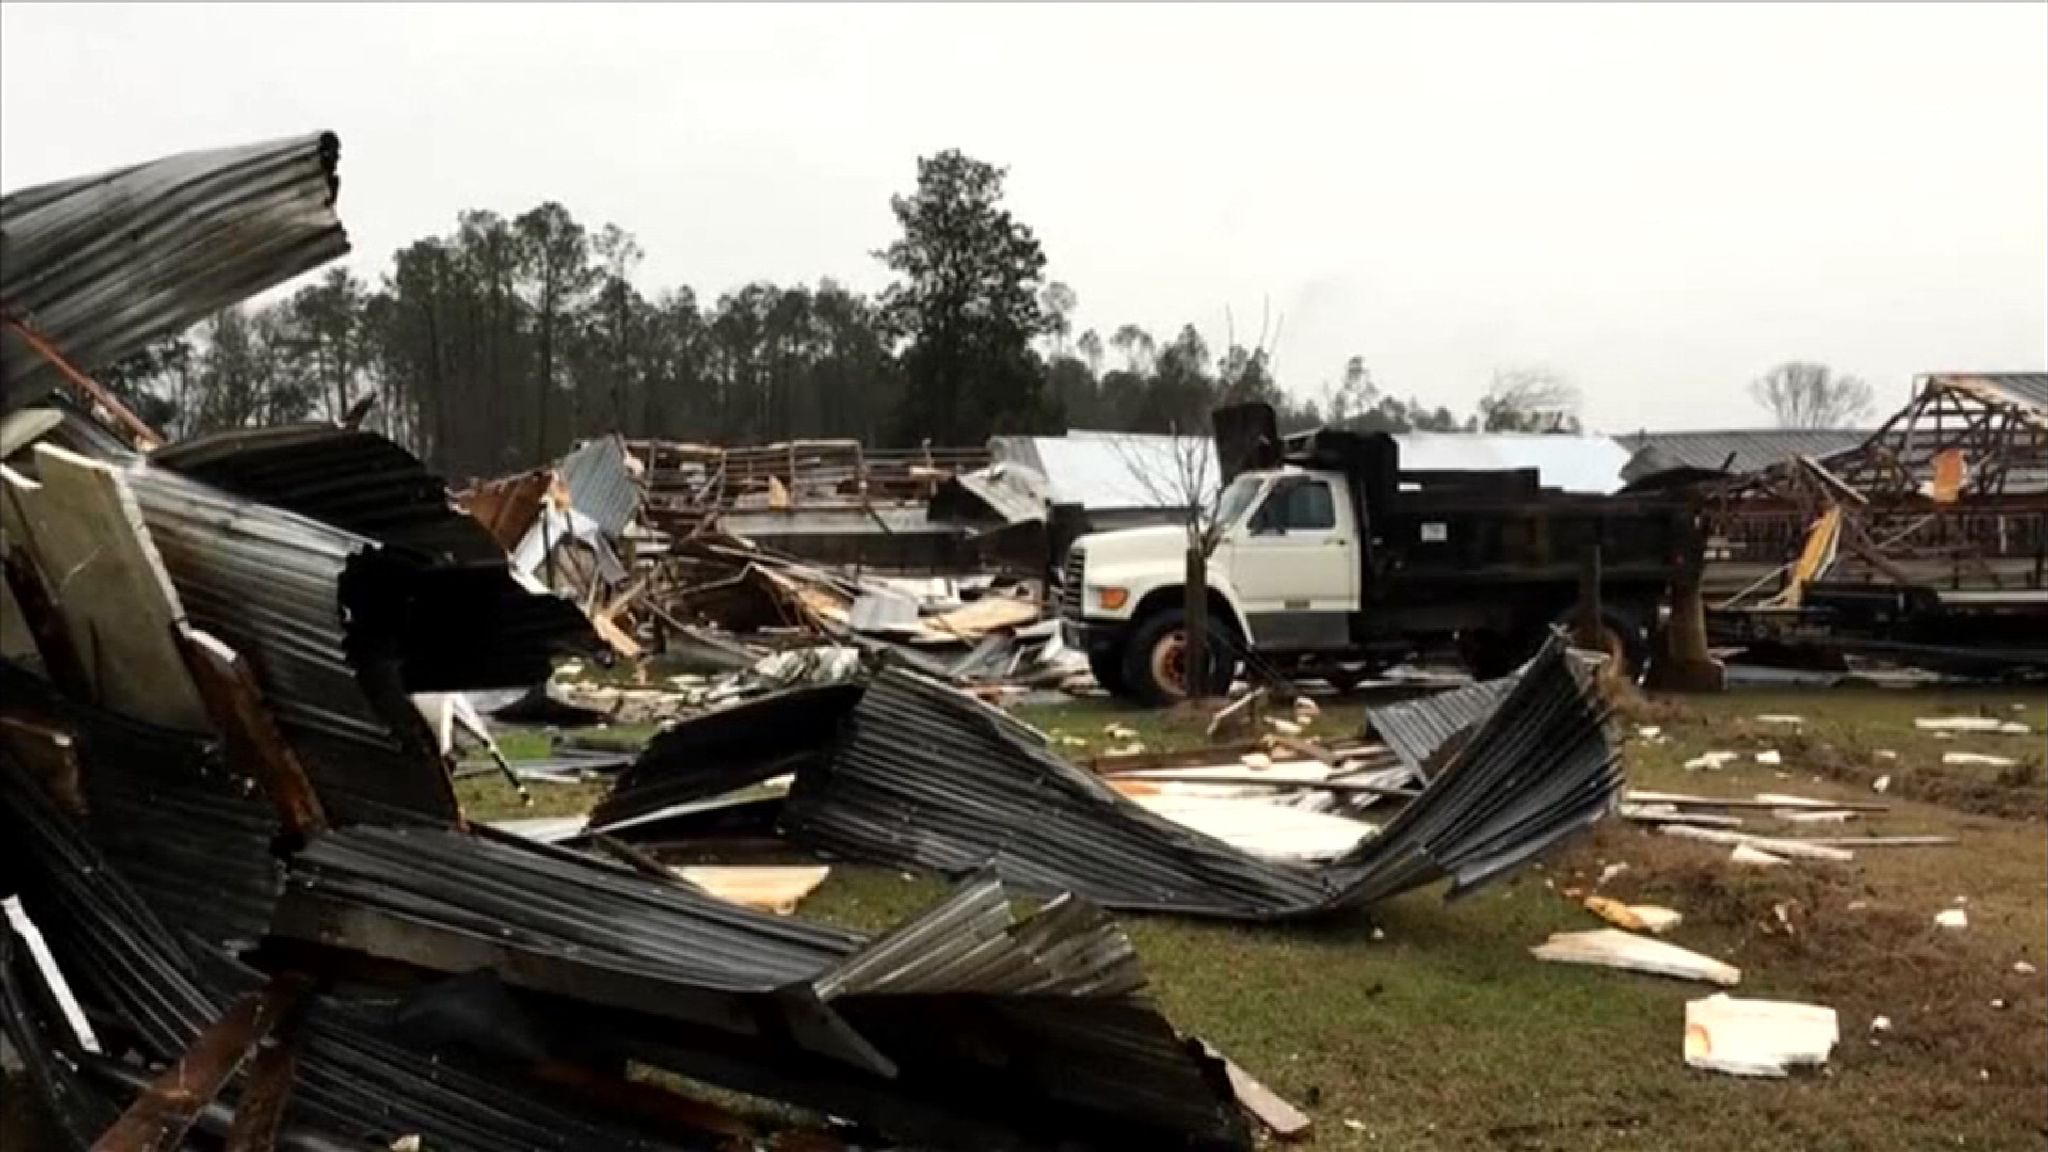 Seven dead as tornado razes mobile home park in World News